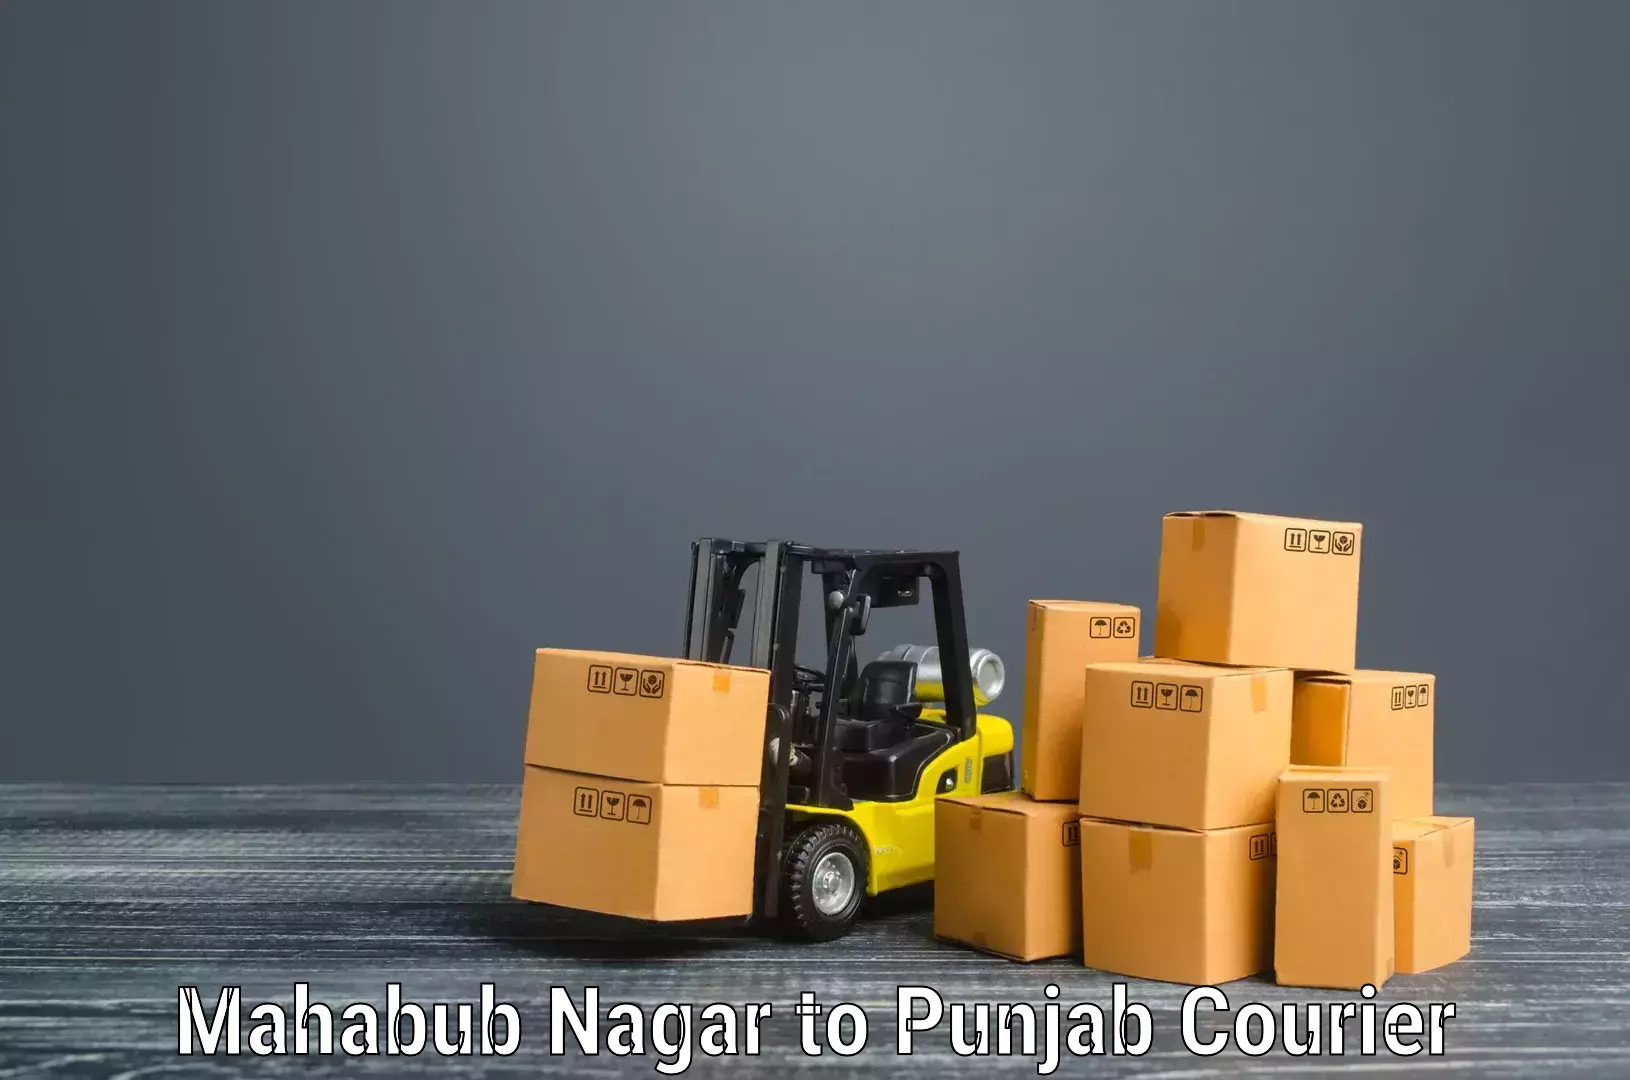 Moving and handling services Mahabub Nagar to Amritsar